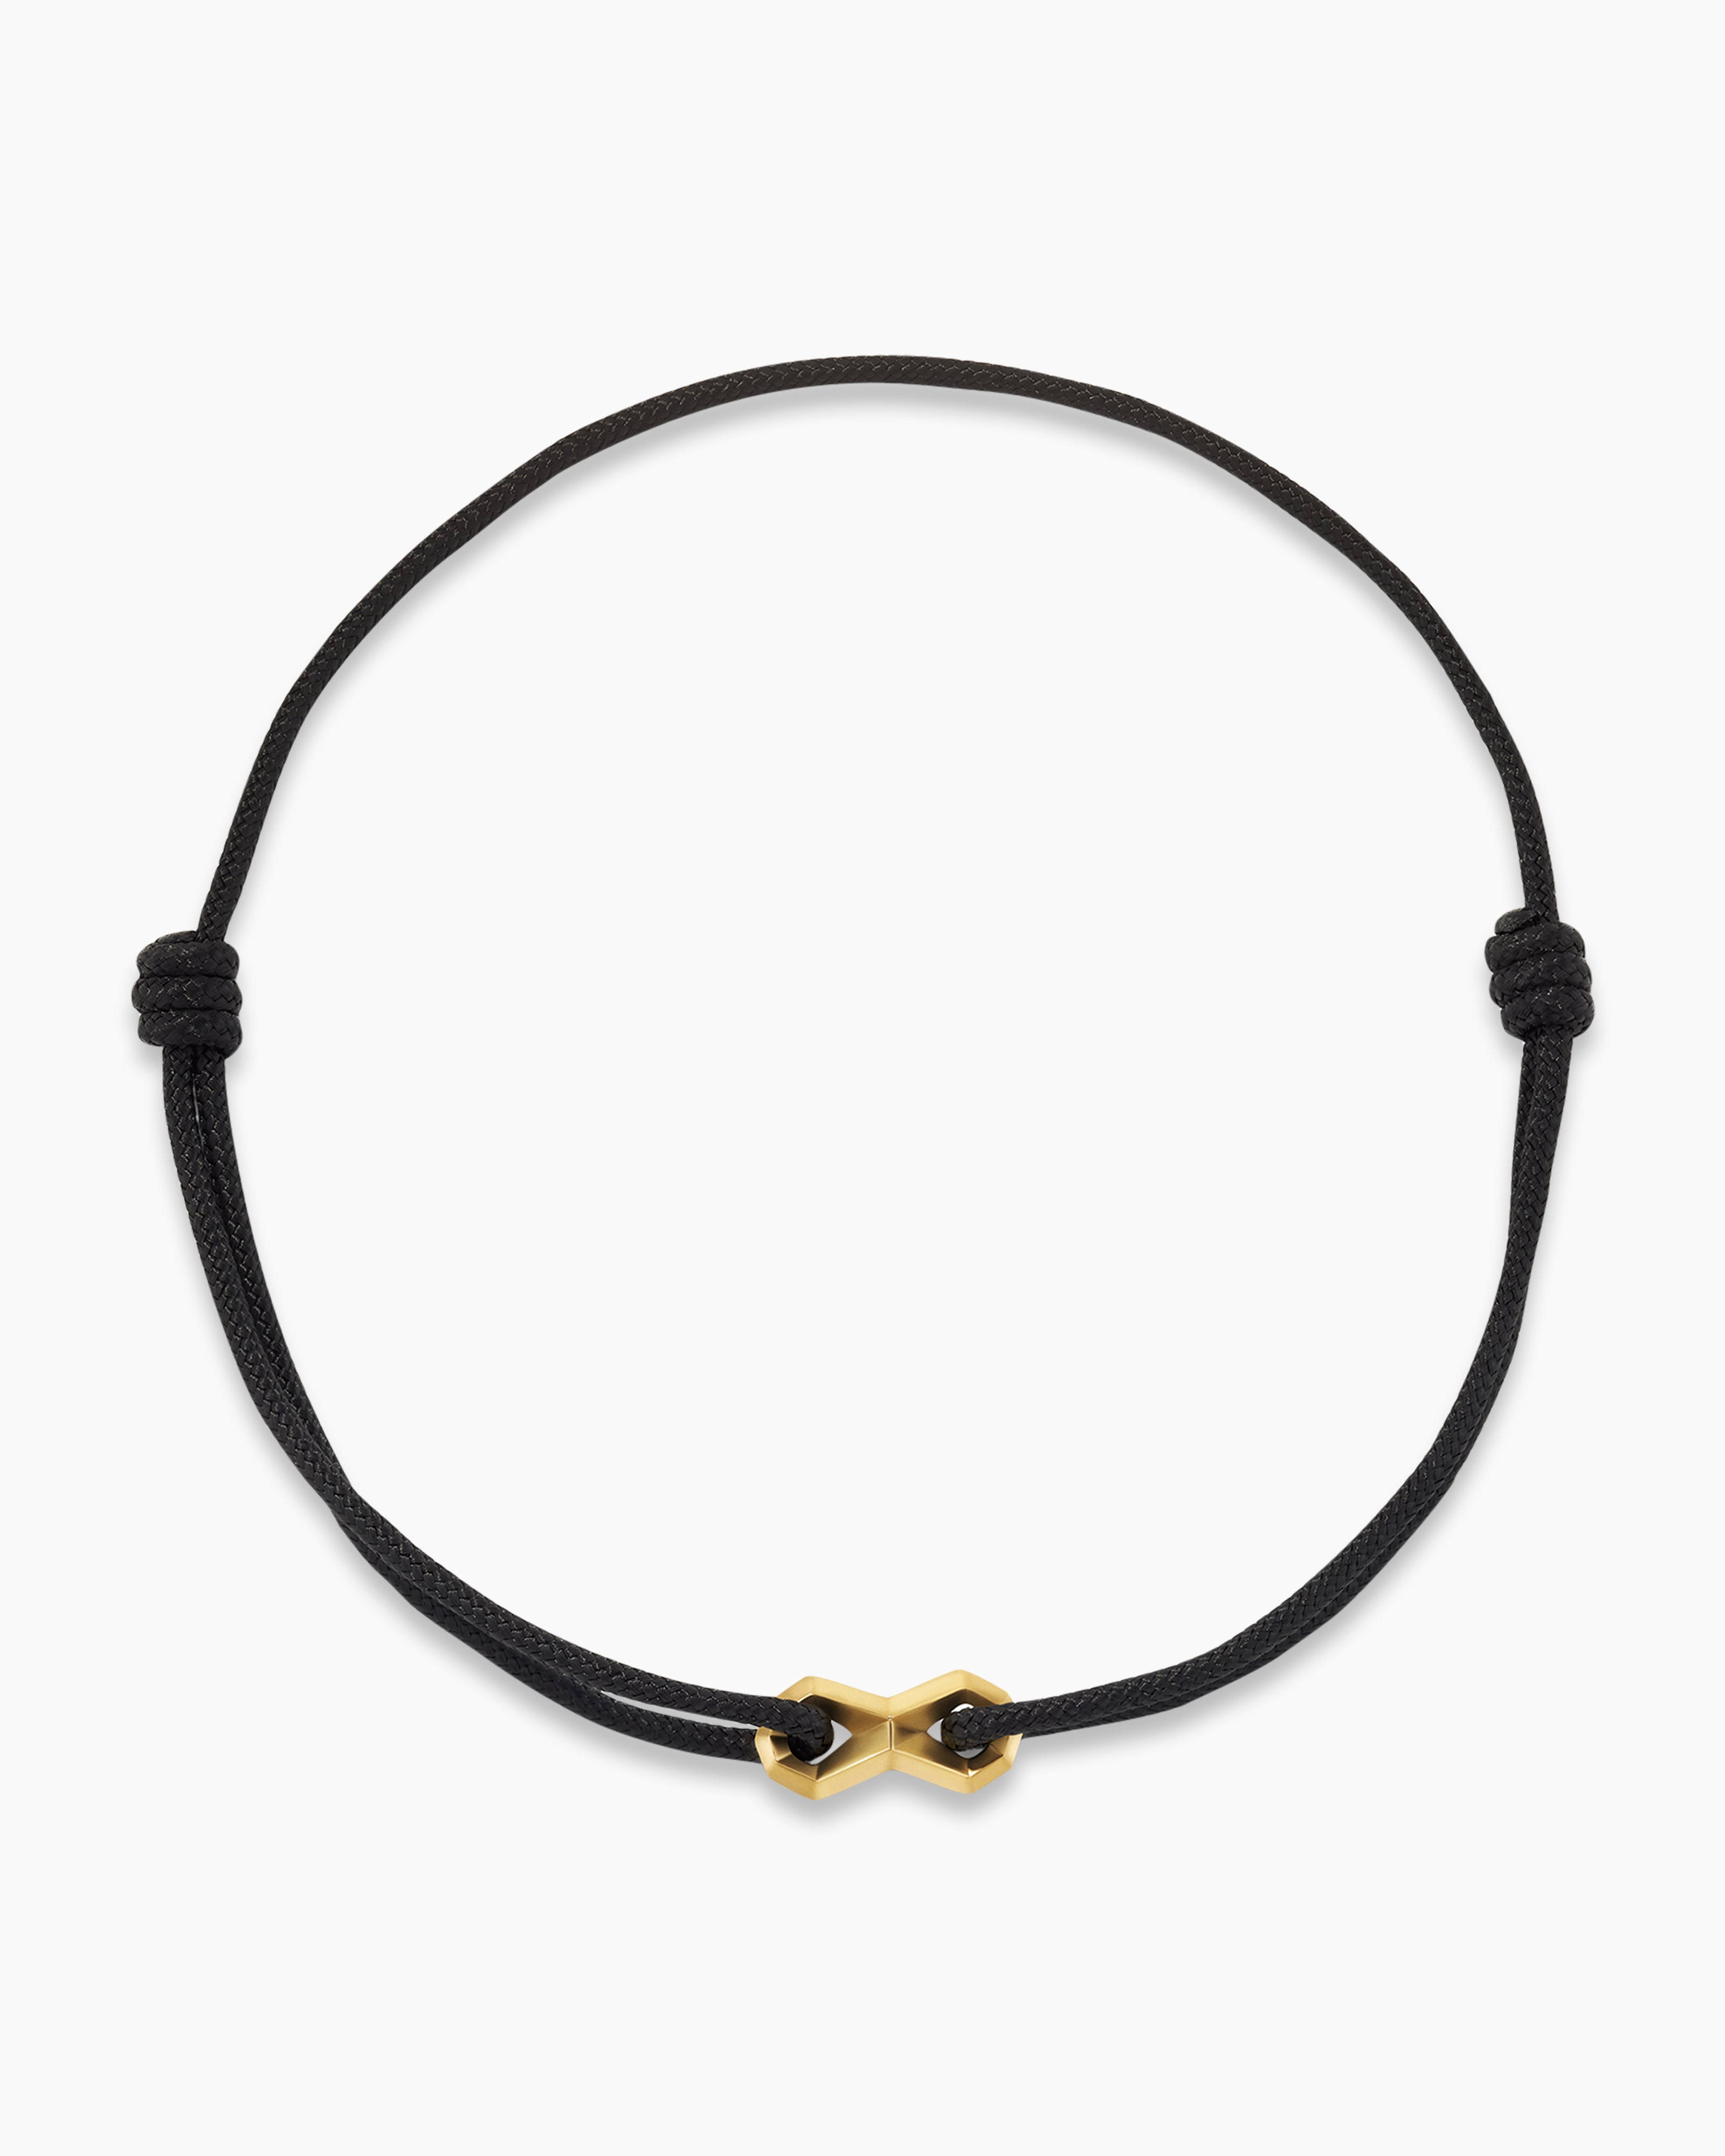 Black Leather Cord Bracelet for Men - Adjustable Cuff Bracelet for Men Gold